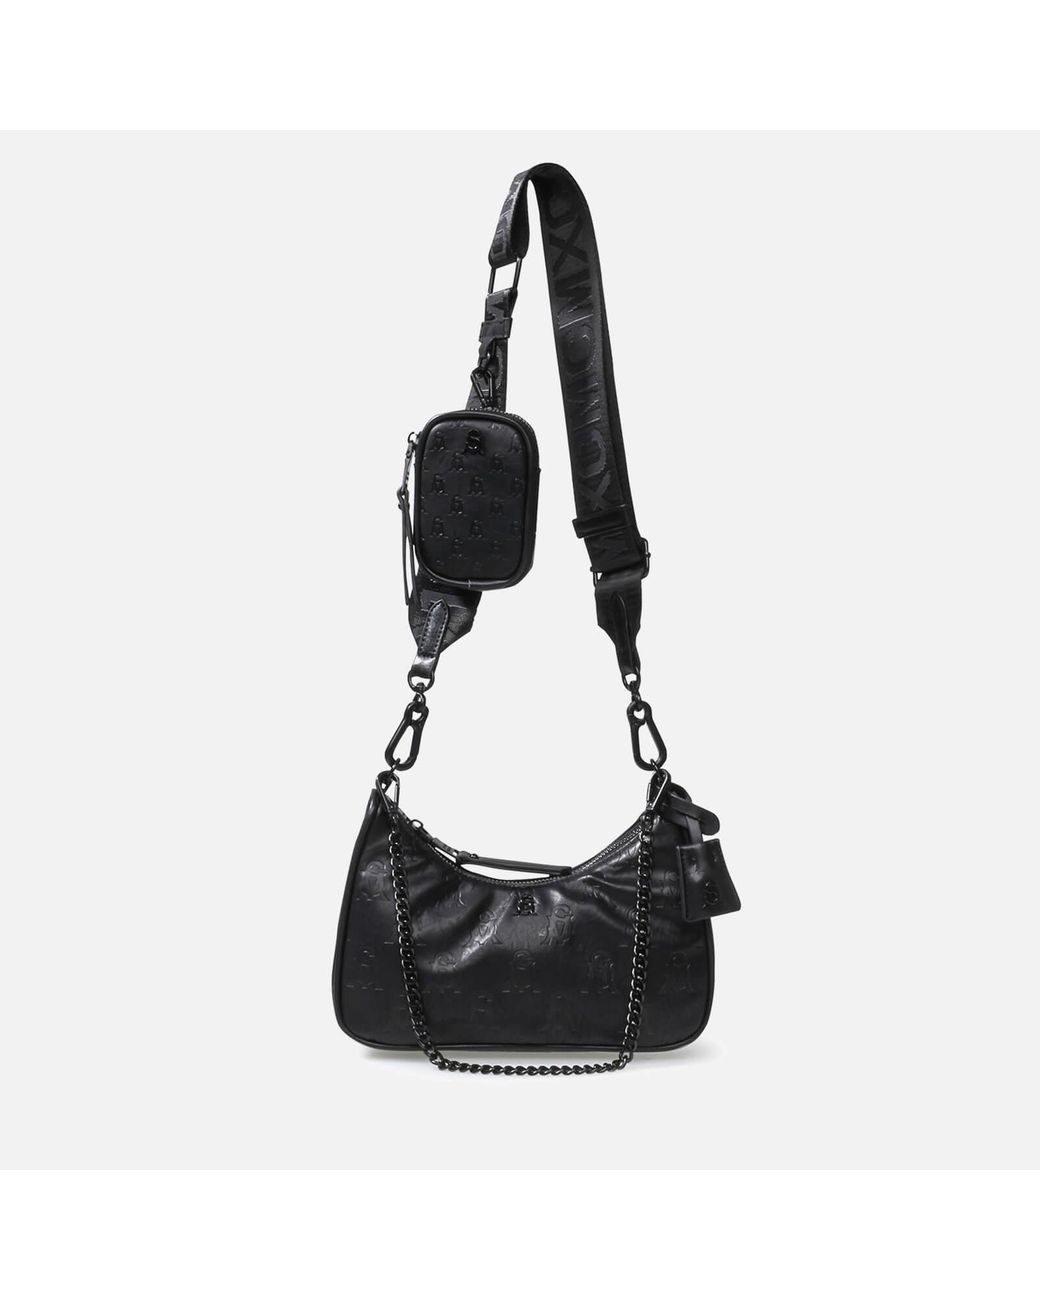 VITAL Saffiano Bag Black Structured Hobo Bag